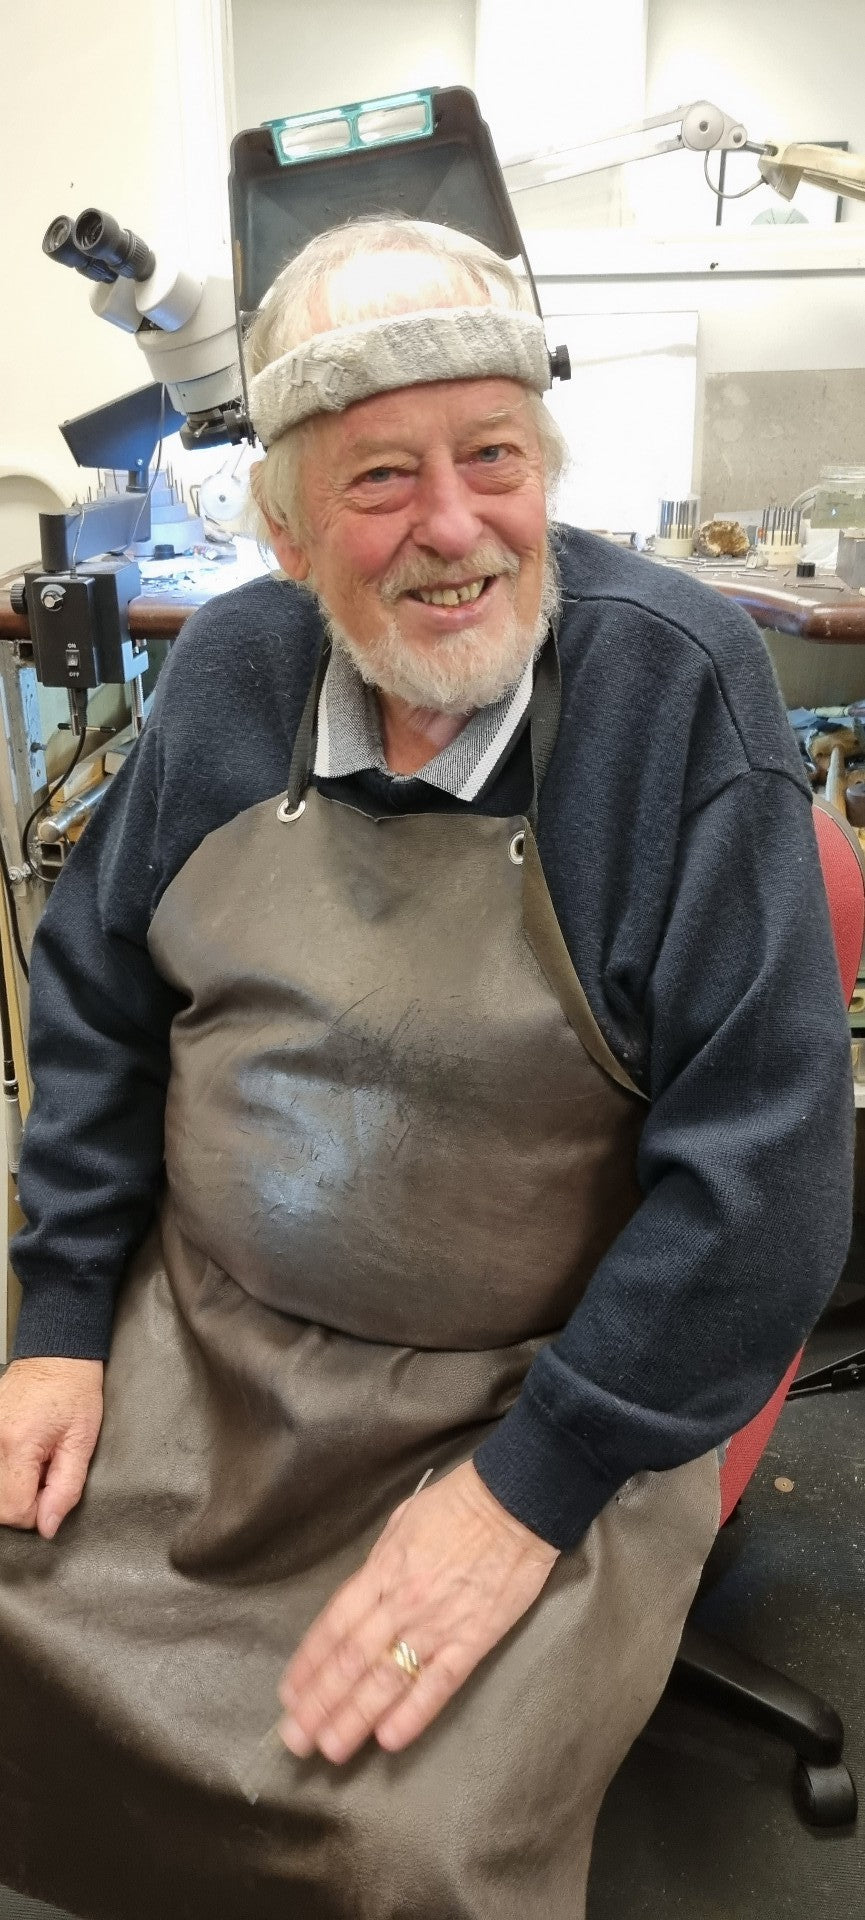 Smiling man wearing leather apron